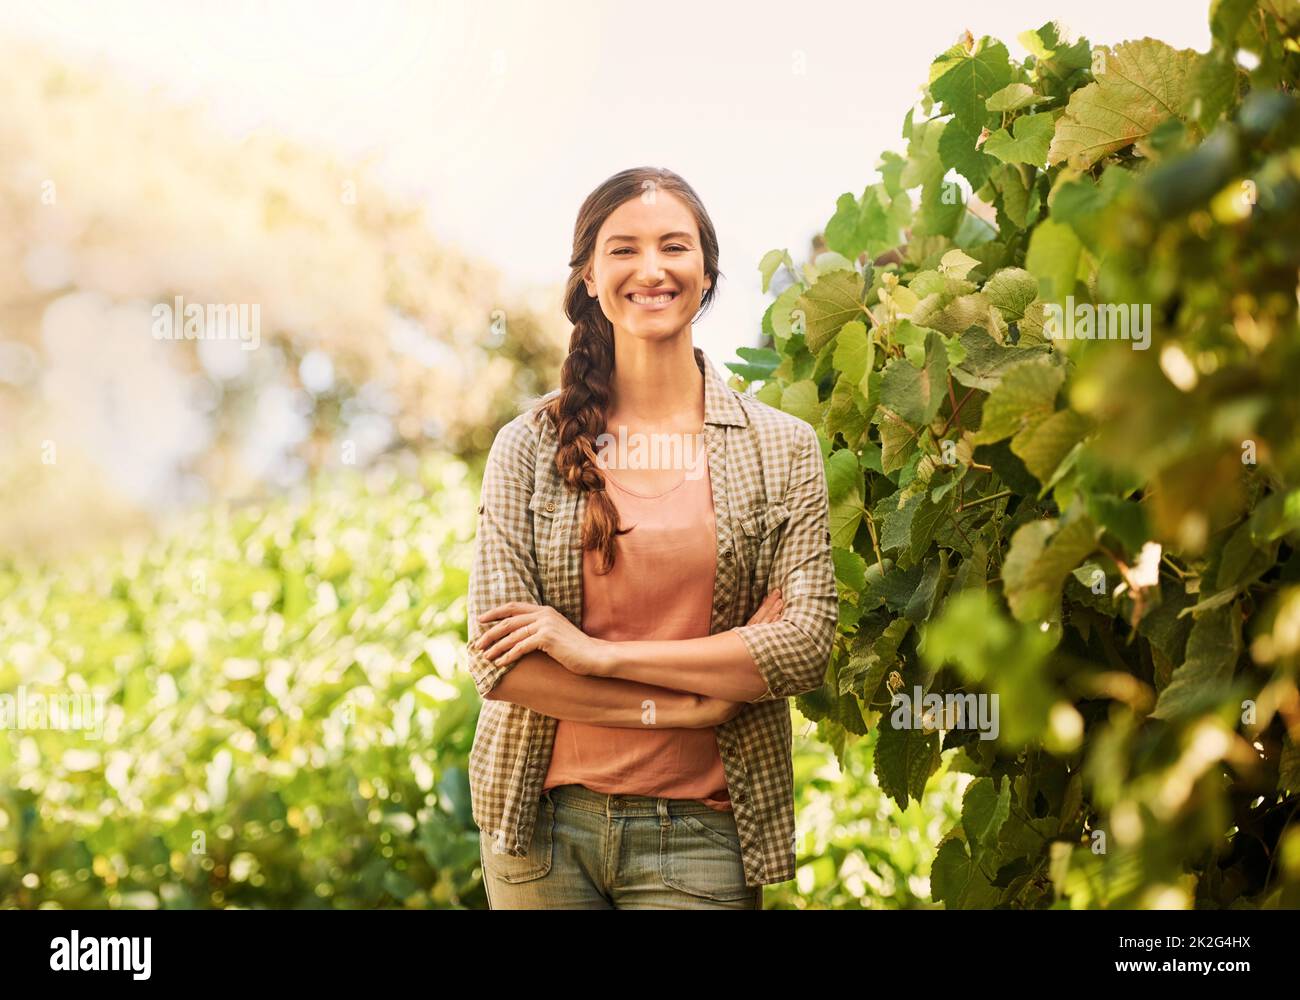 Retrato de una joven y alegre campesina posando en los campos de su granja. Foto de stock